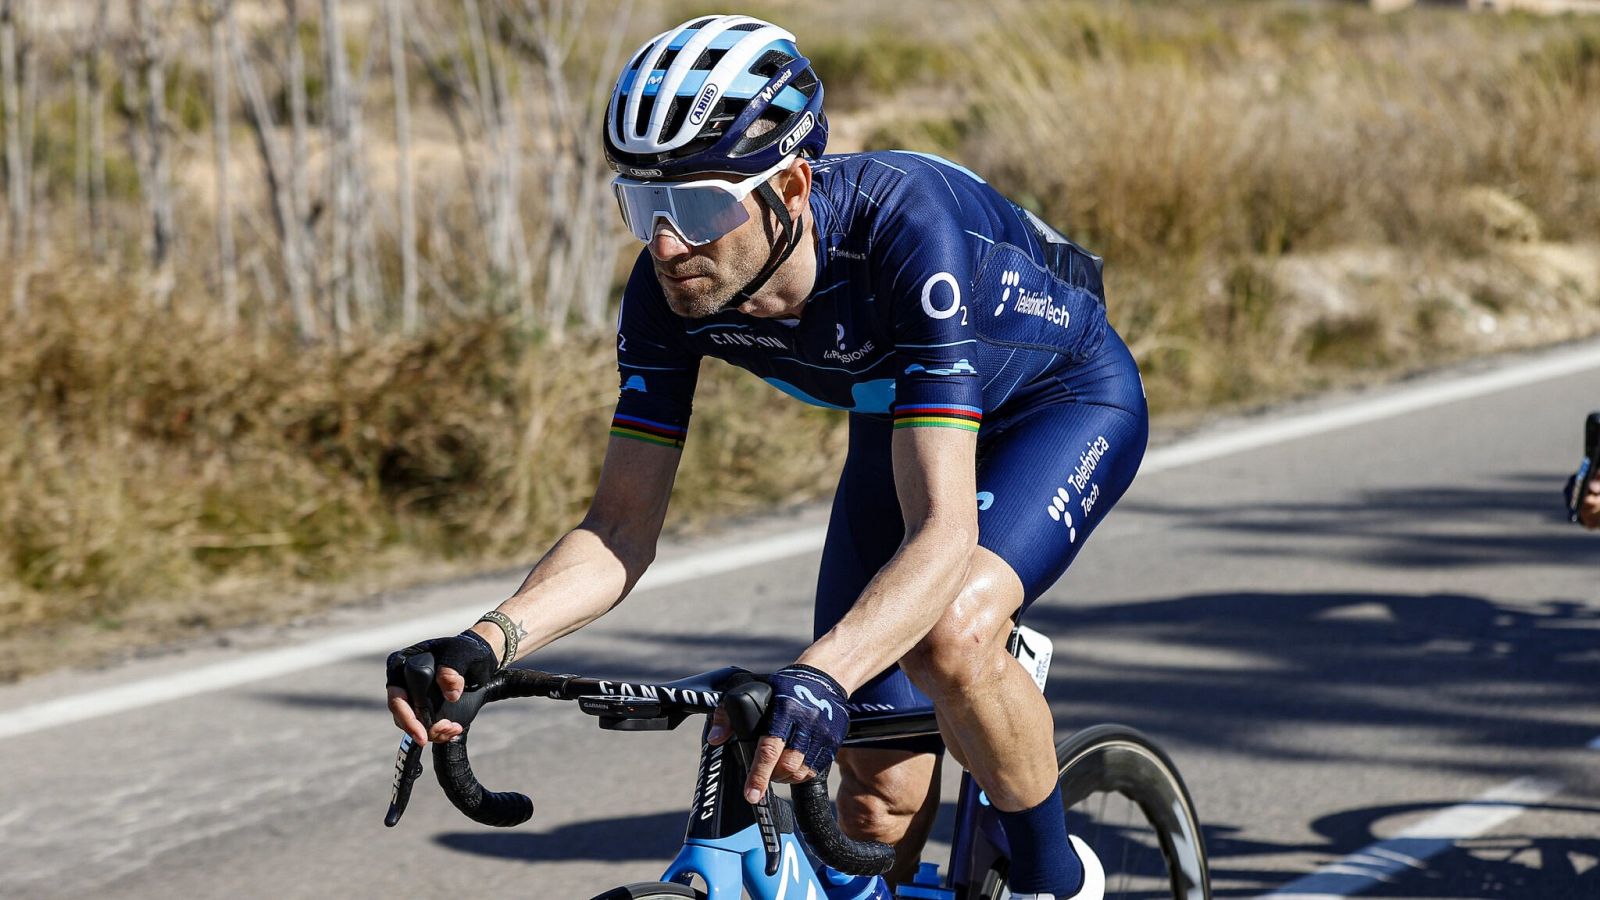 El murciano Alejandro Valverde en una imagen facilitada por Movistar.